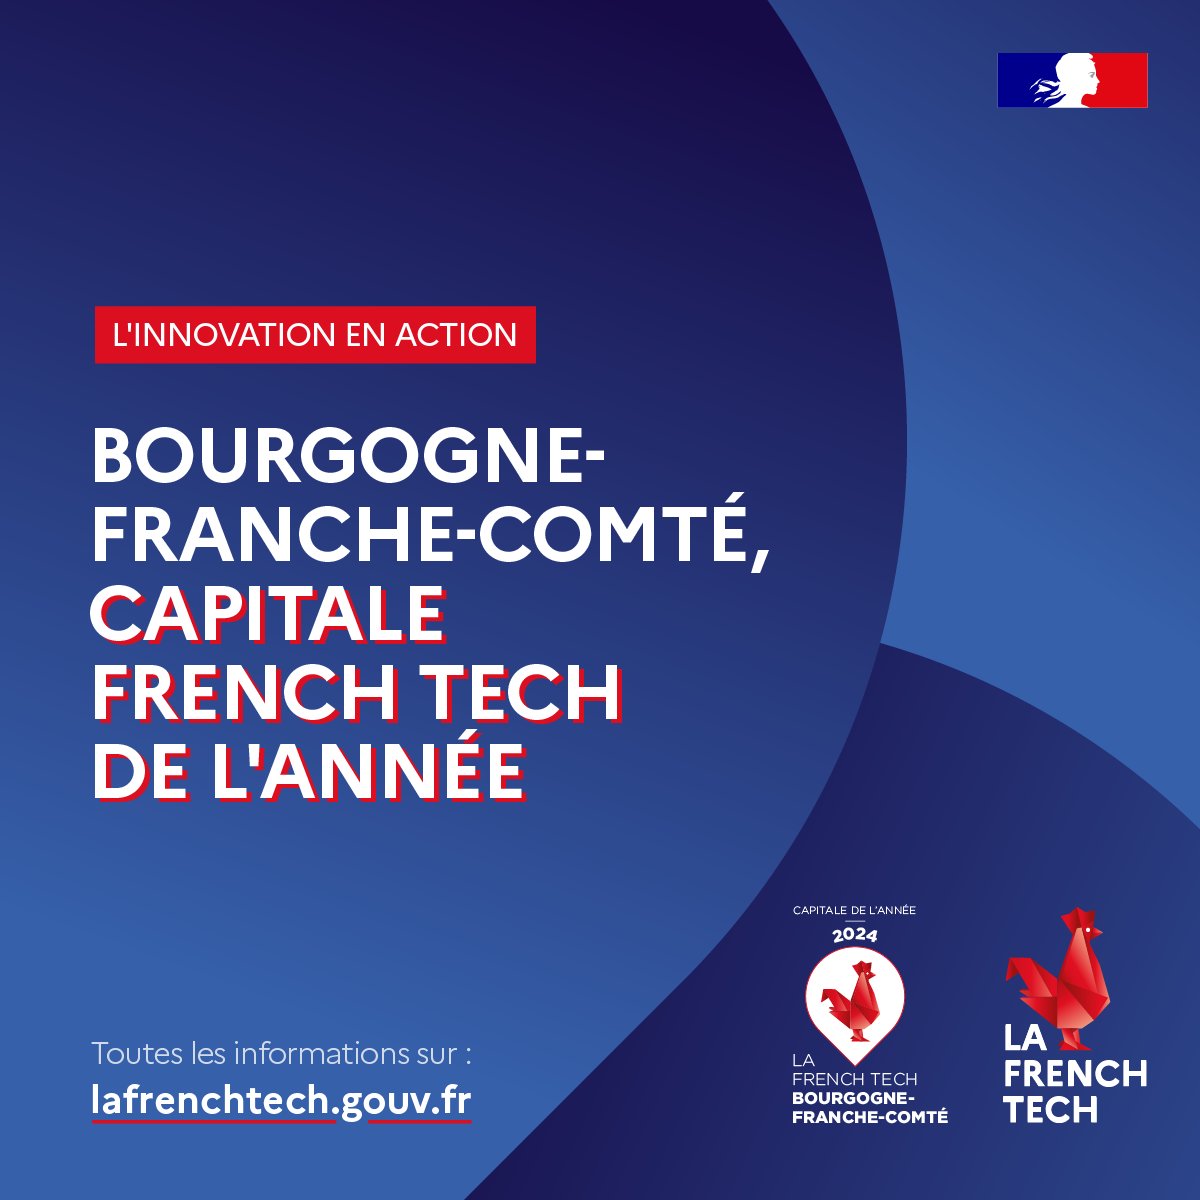 La @FrenchTechBFC obtient le titre de Capitale French Tech de l’année pour l'édition 2024 🐓 Un territoire dynamique où @Marina_Ferrari et @ClaraChappaz sont présentes aujourd'hui pour rencontrer l'écosystème local !